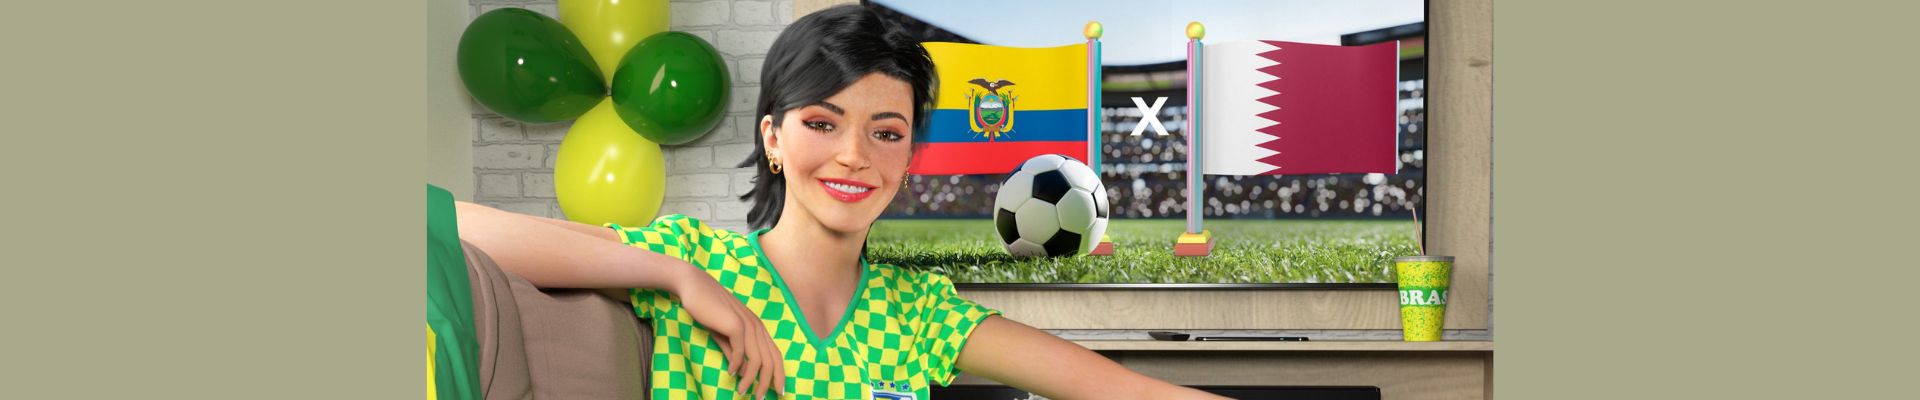 Magalu é varejista com maior engajamento nas redes sociais durante Copa do Mundo